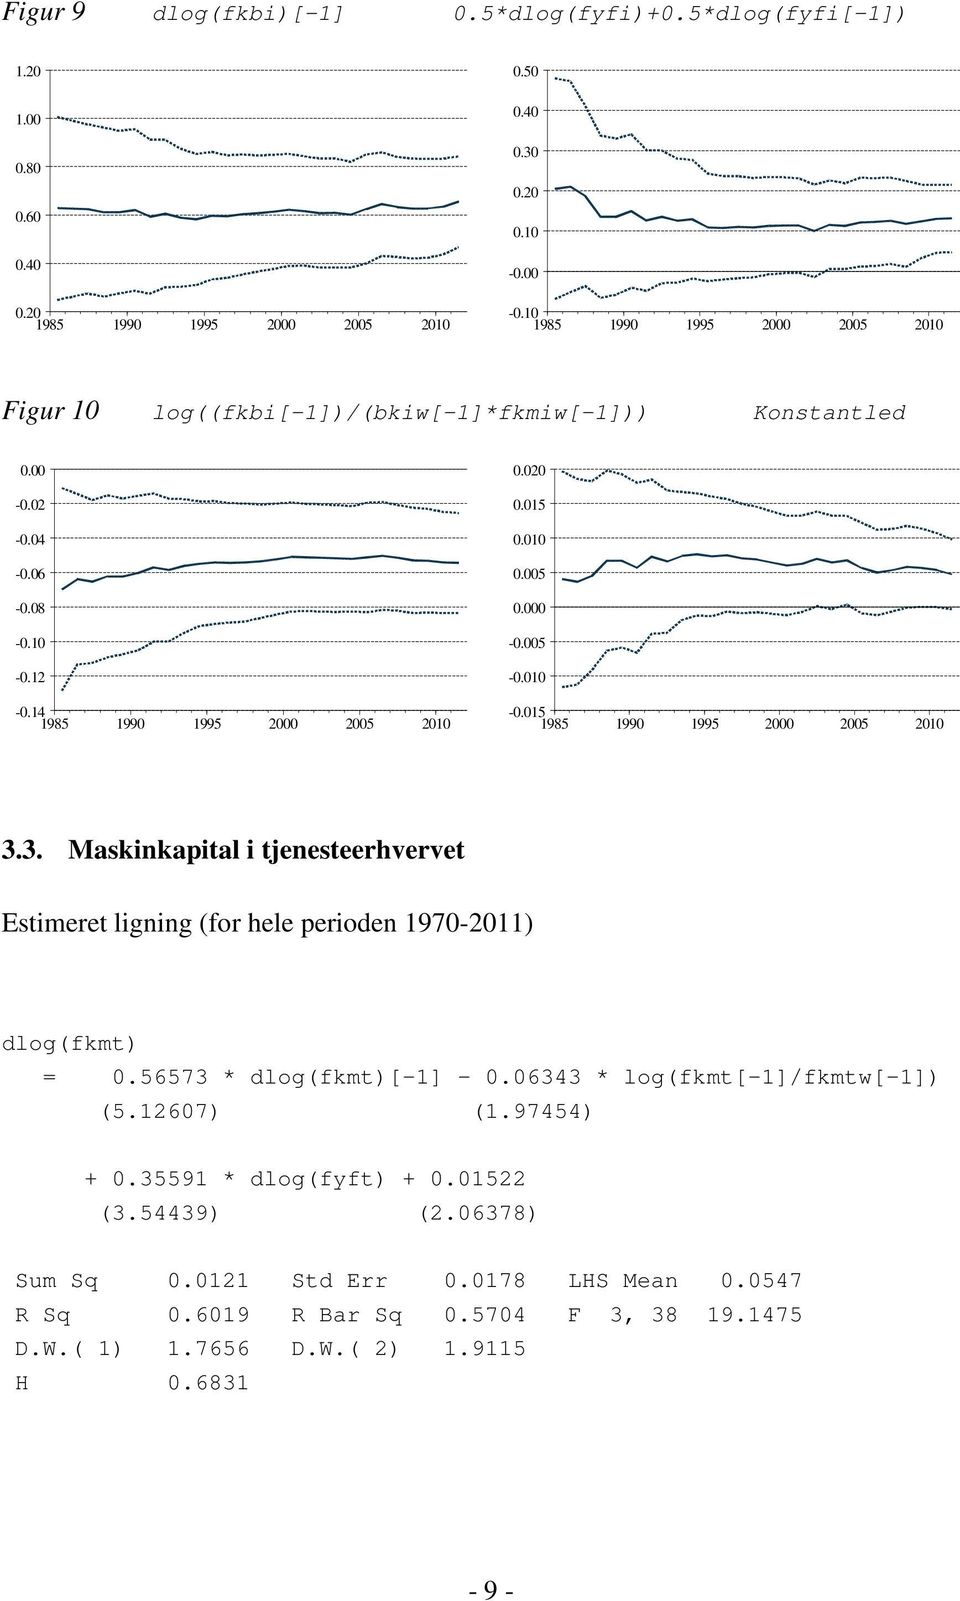 3. Maskinkapital i tjenesteerhvervet Estimeret ligning (for hele perioden 1970-2011) dlog(fkmt) = 0.56573 * dlog(fkmt)[-1] - 0.